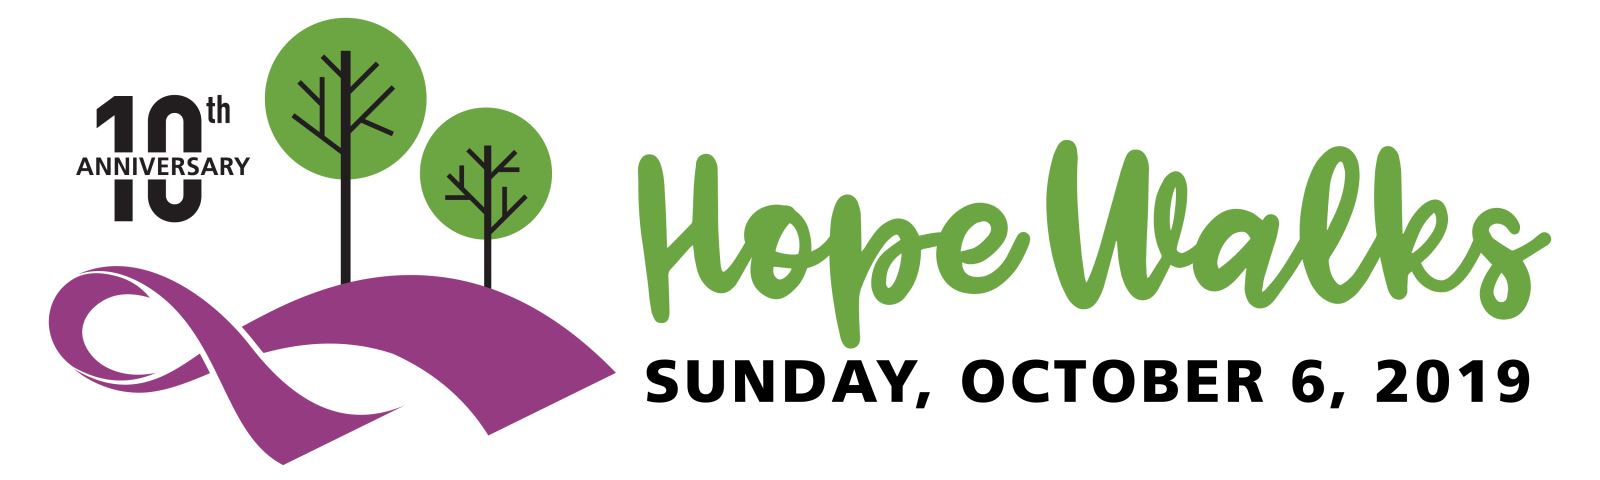 Hope Walks - 10th Anniversary